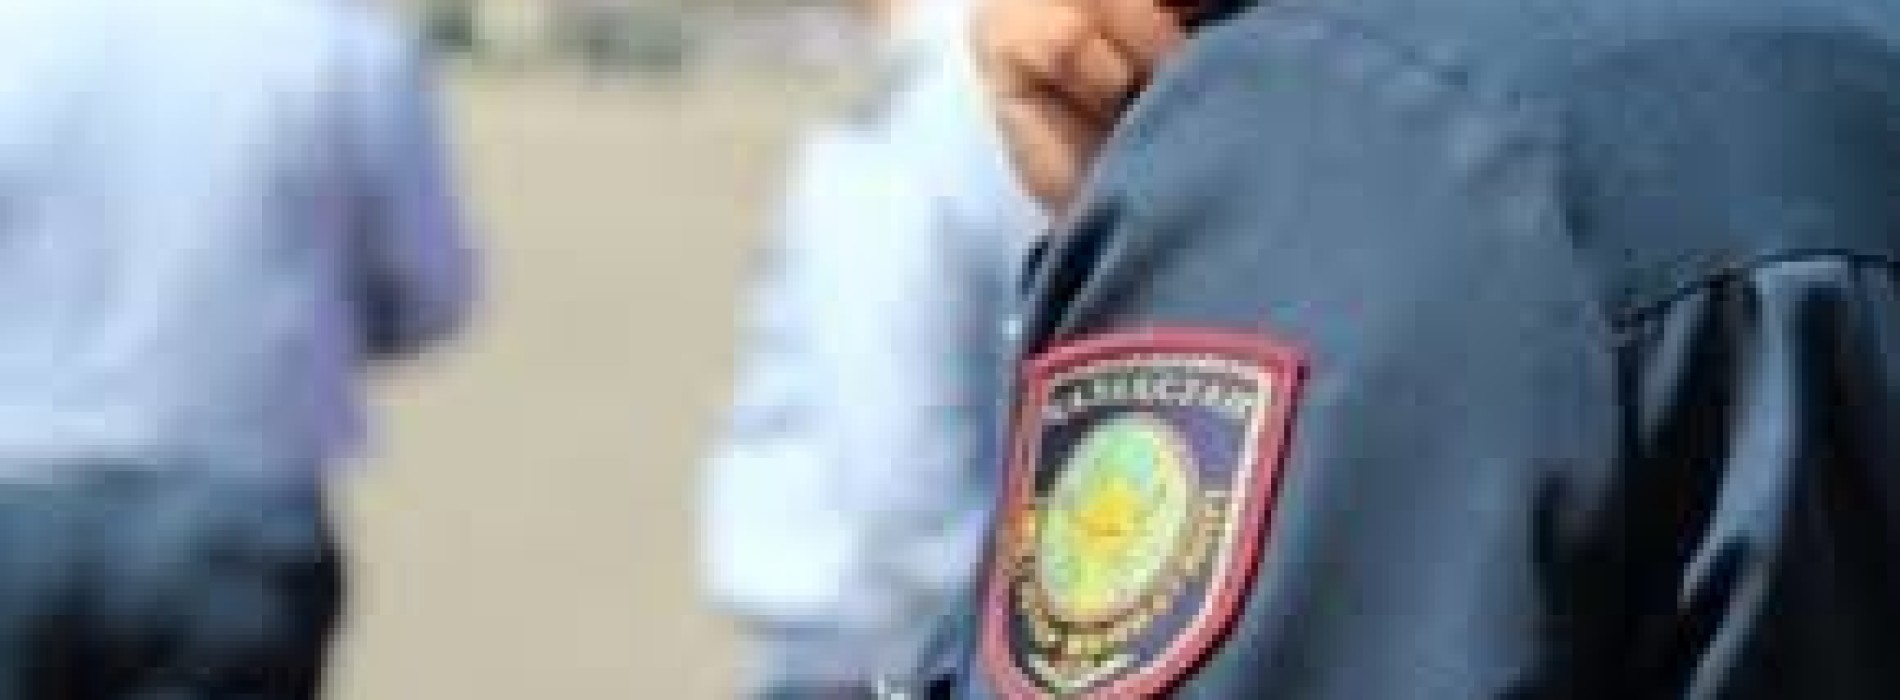 Полиция Алматы отвергла обвинения в избиении пожилого мужчины